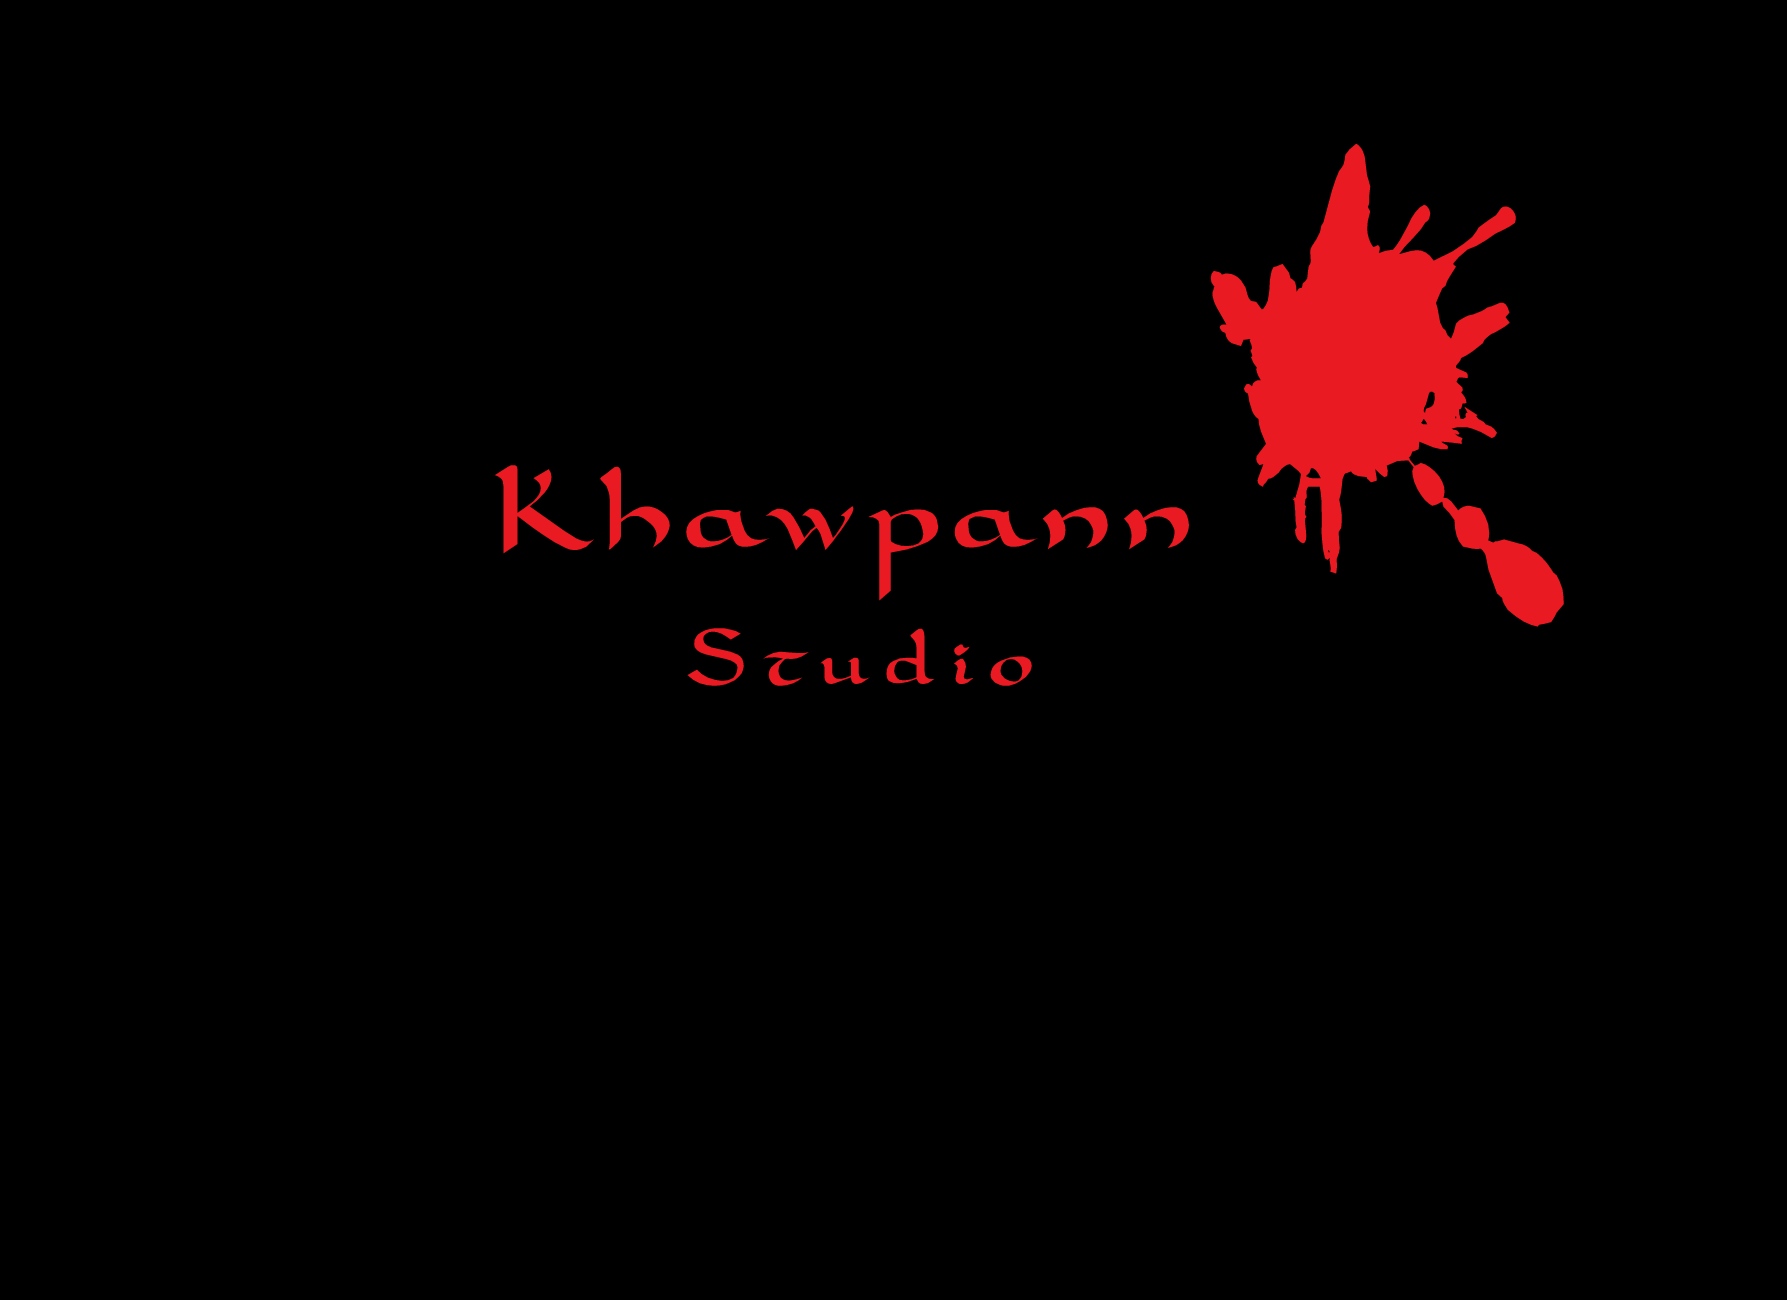 Khawpann Studio by Fang Thestroke